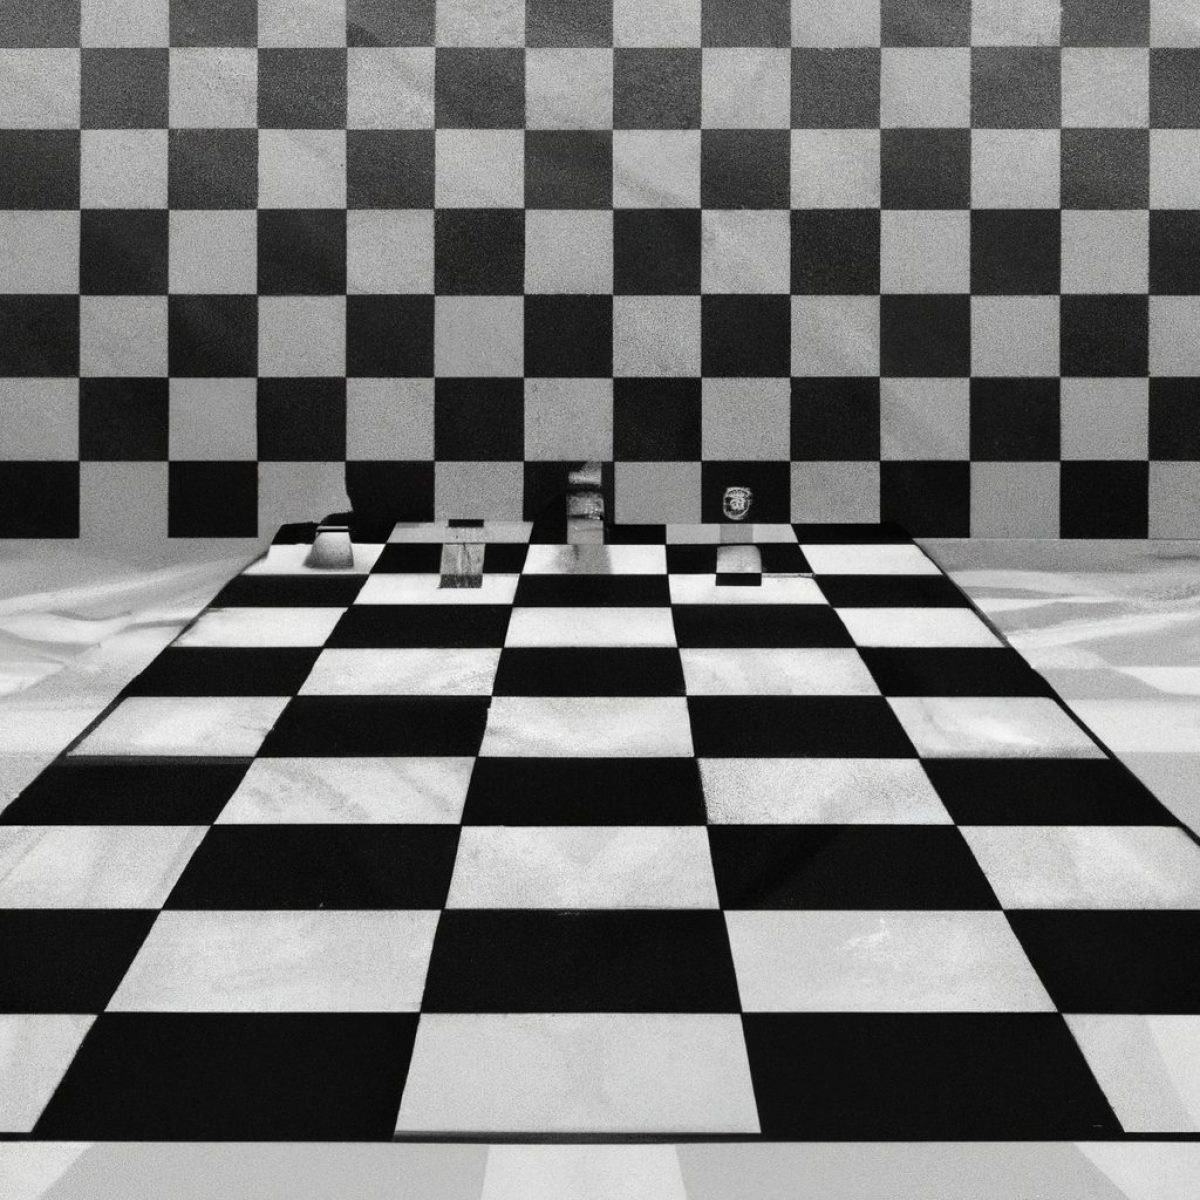 Dominando as aberturas de xadrez - vol. 2 - CIENCIA MODERNA